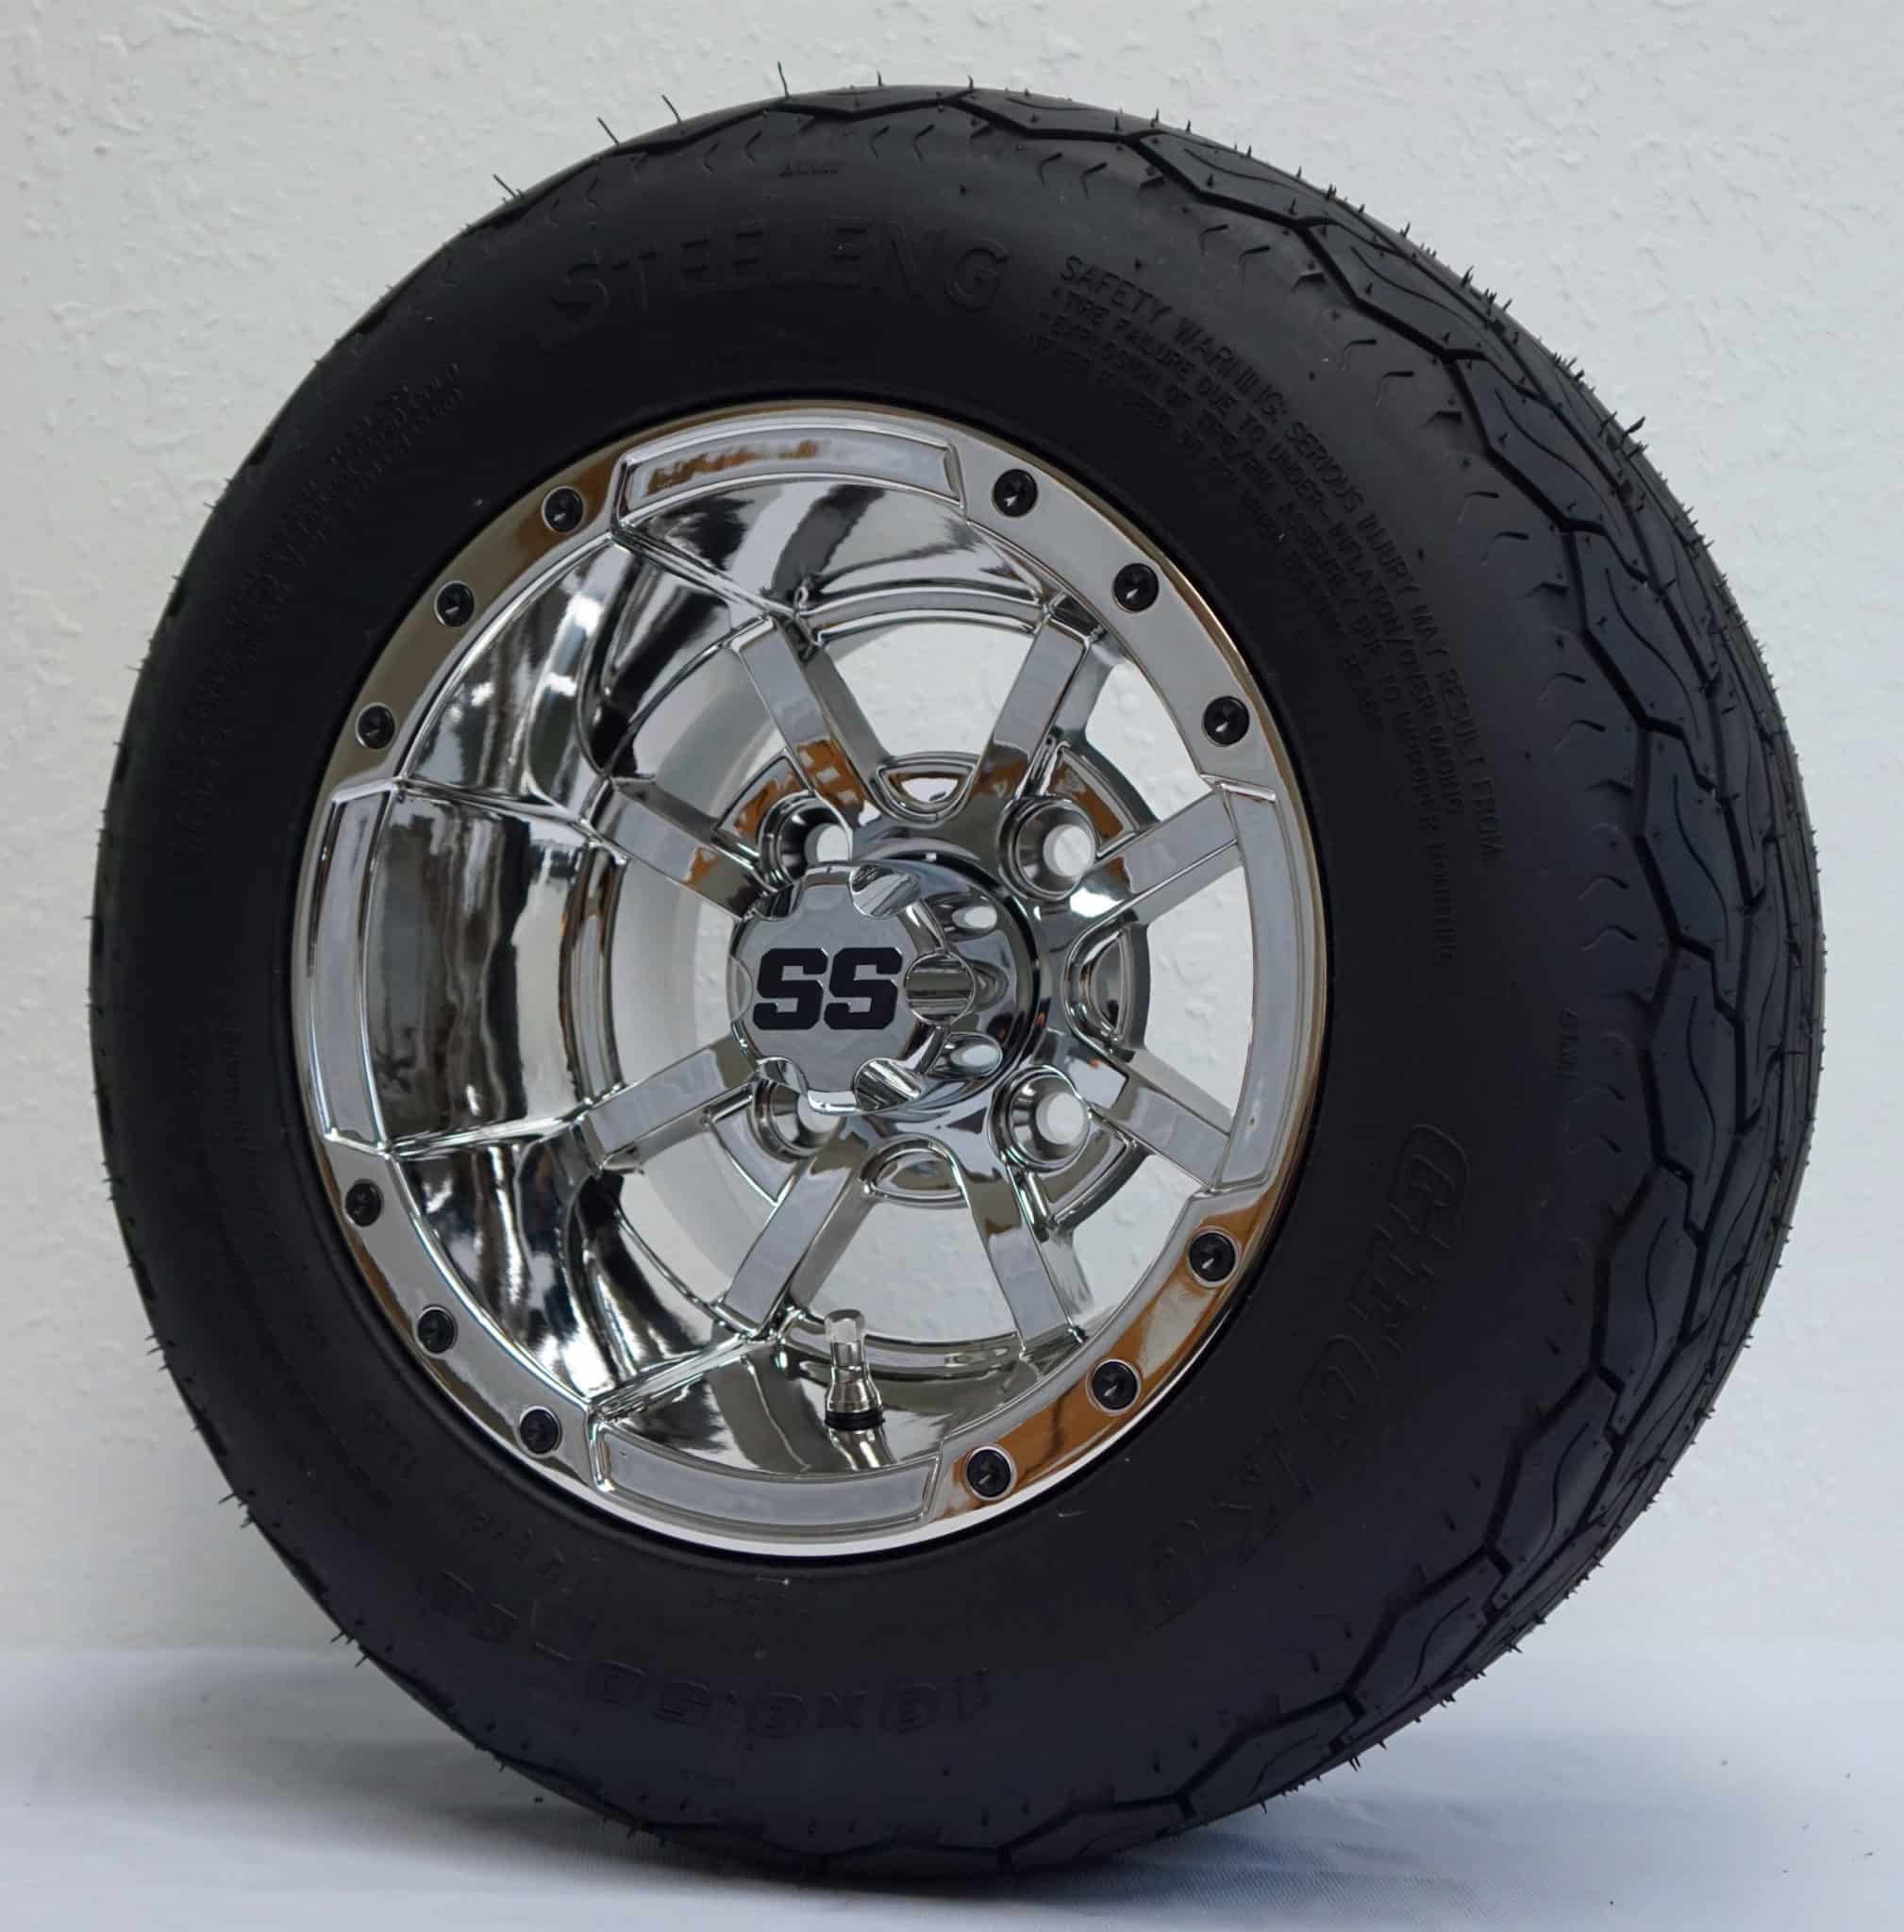 BNDL-TR1001-WH1013-CC0001-LN0001 10" Storm Trooper Chrome Wheel Aluminum Allow & 18" x9" -10" Gecko All Terrain Tire 4x BNDL-TR1001-WH1013-CC0001-LN0001